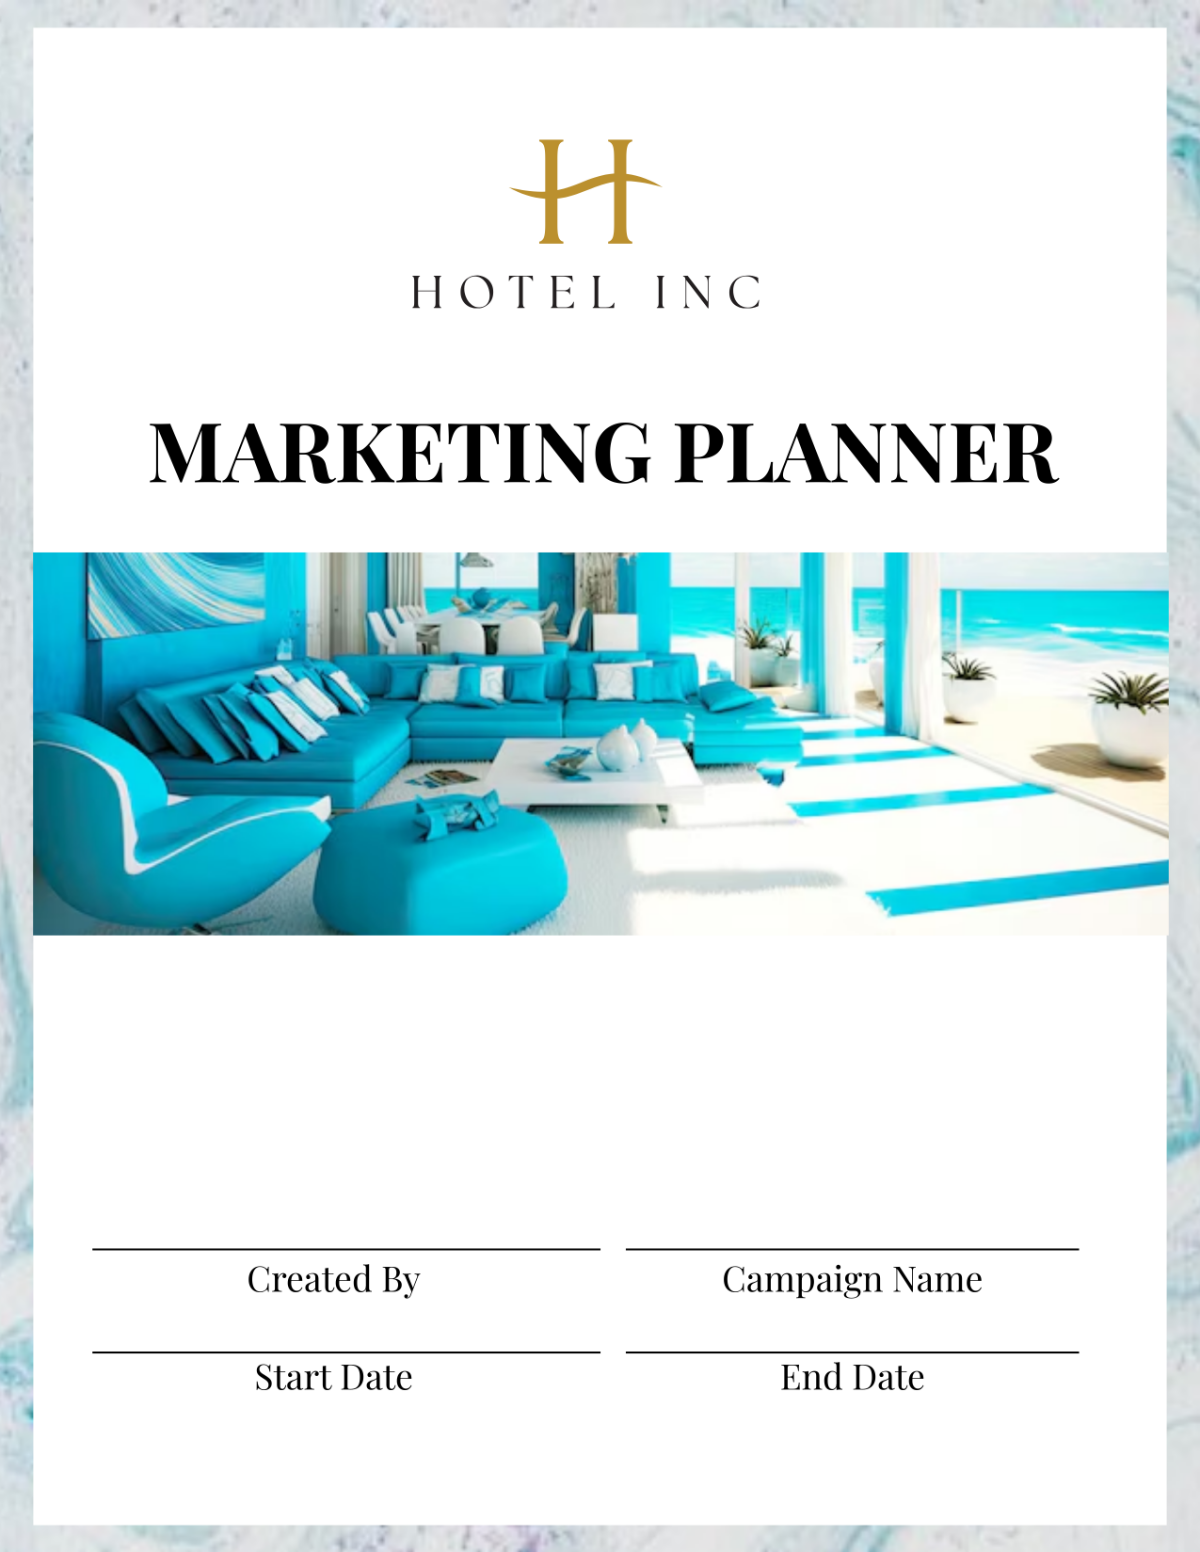 Hotel Marketing Planner